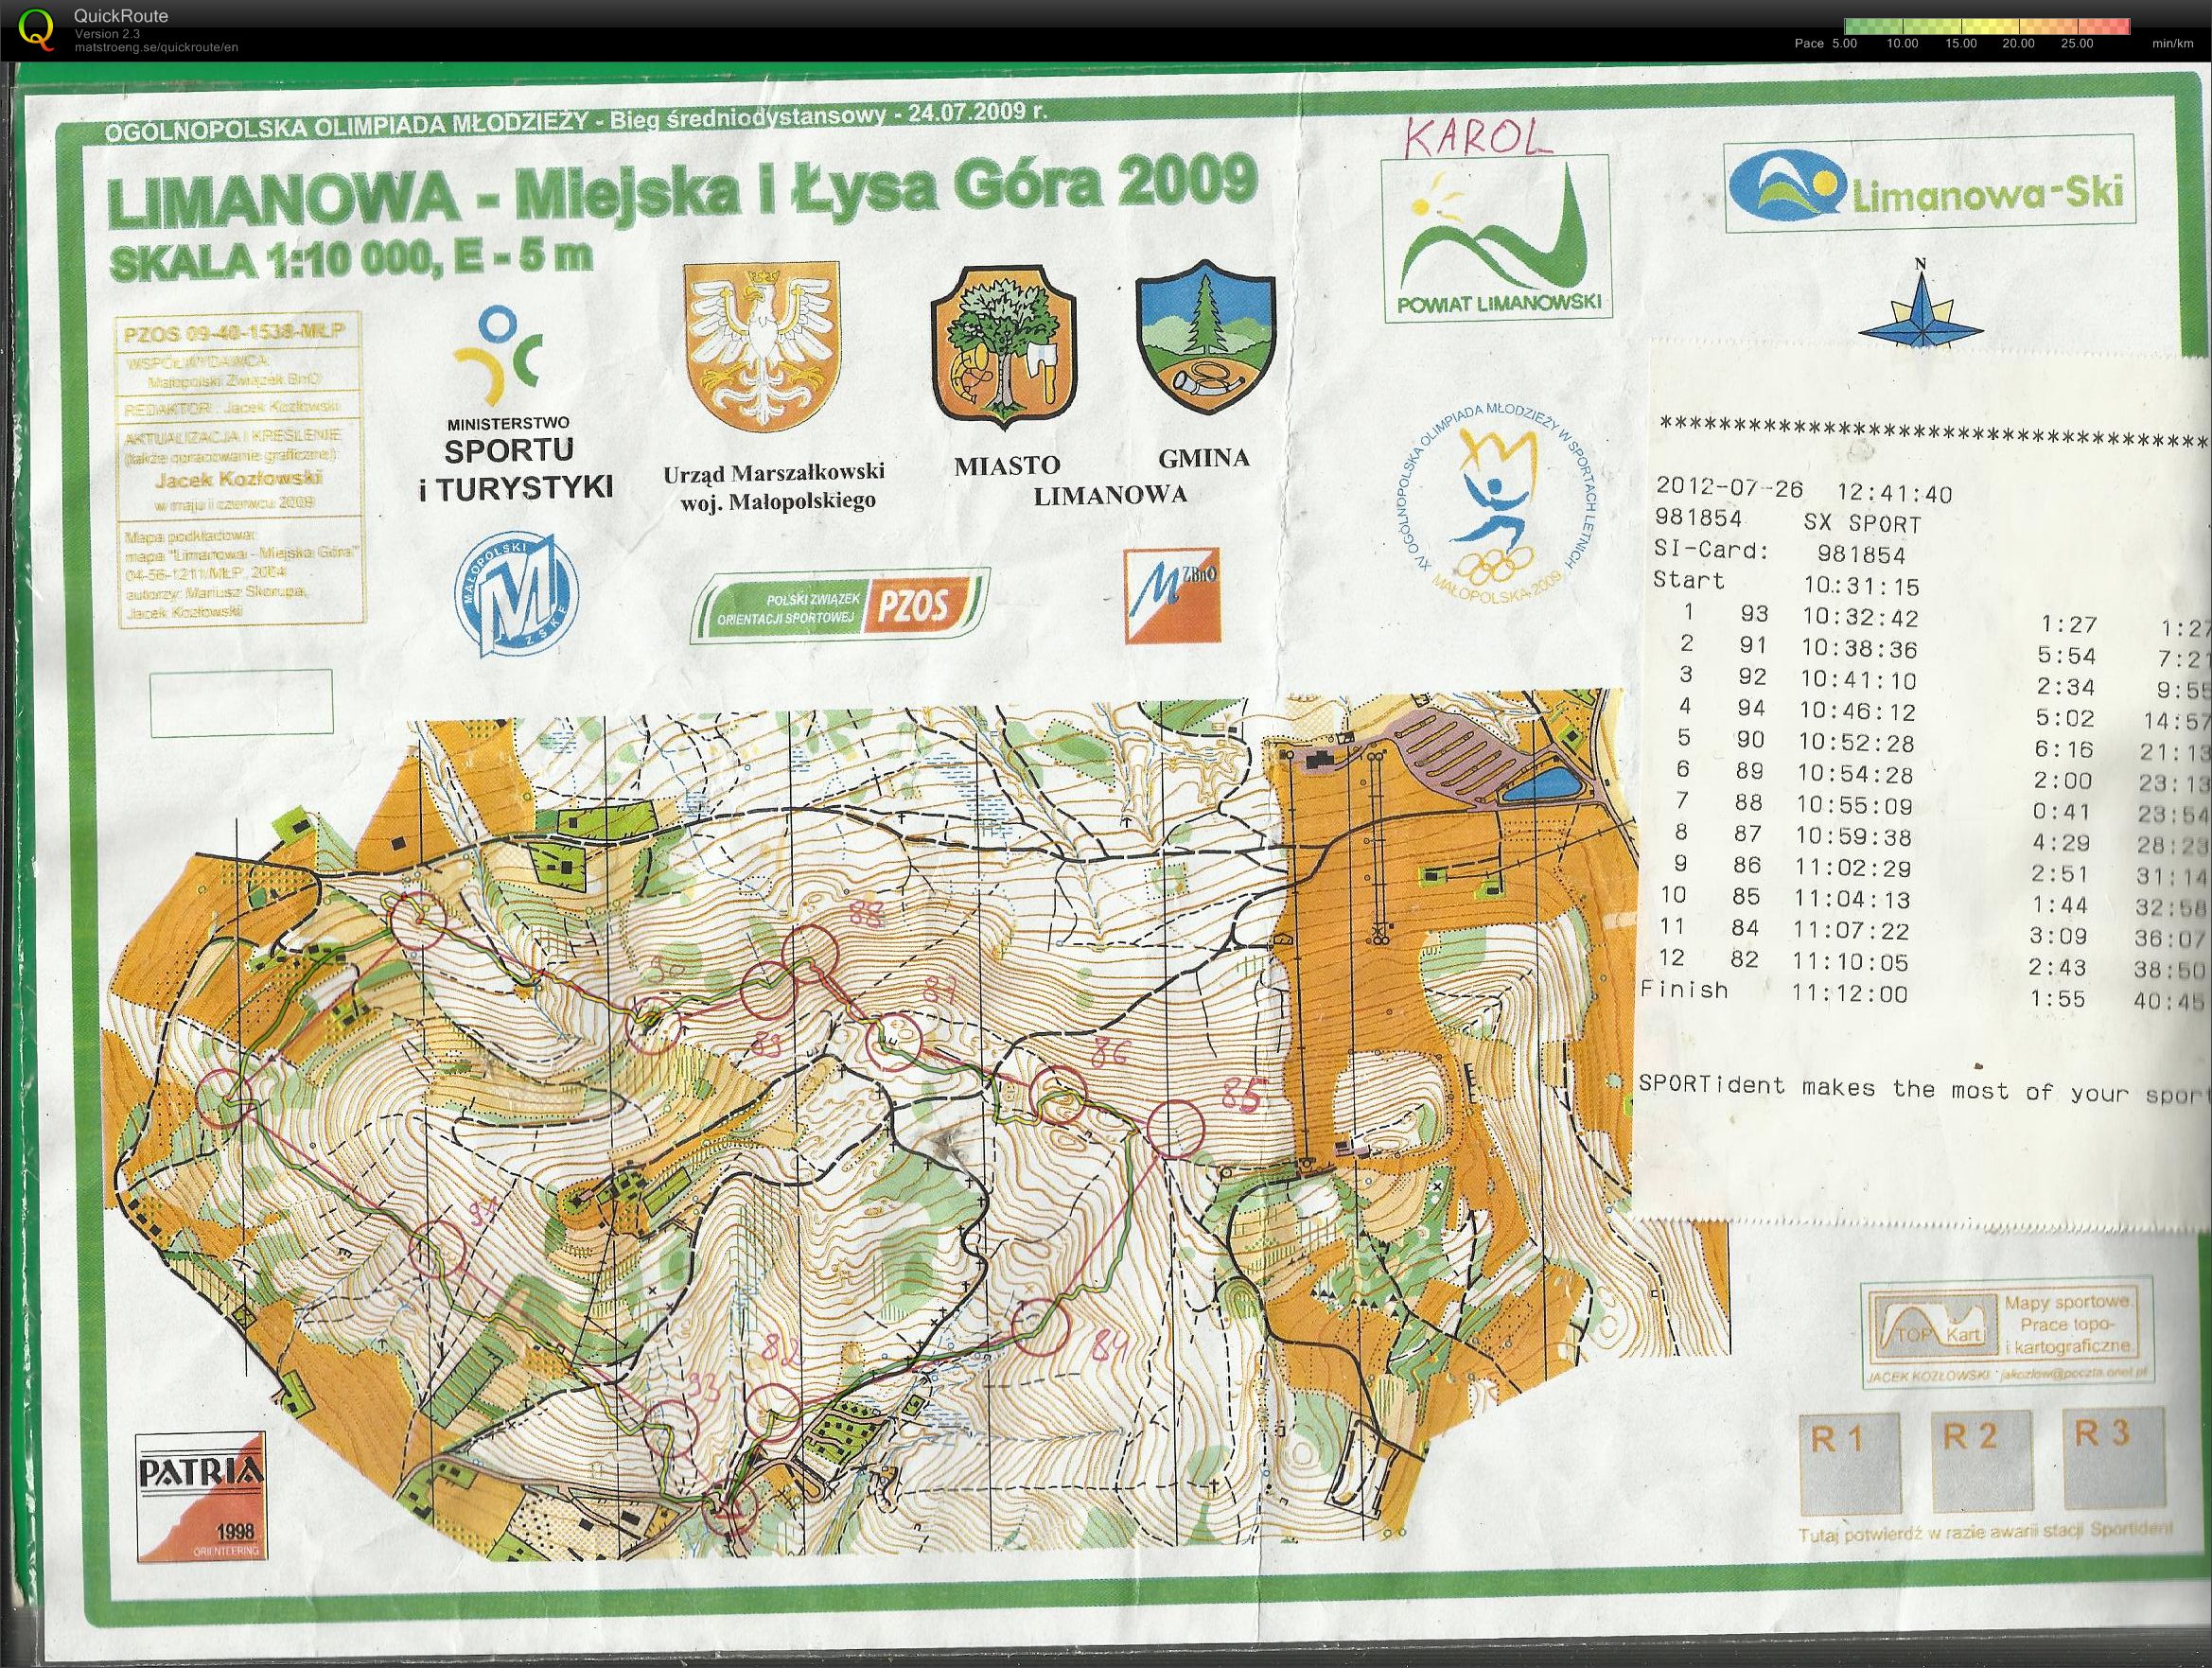 Trening - obóz Limanowa (26-07-2012)